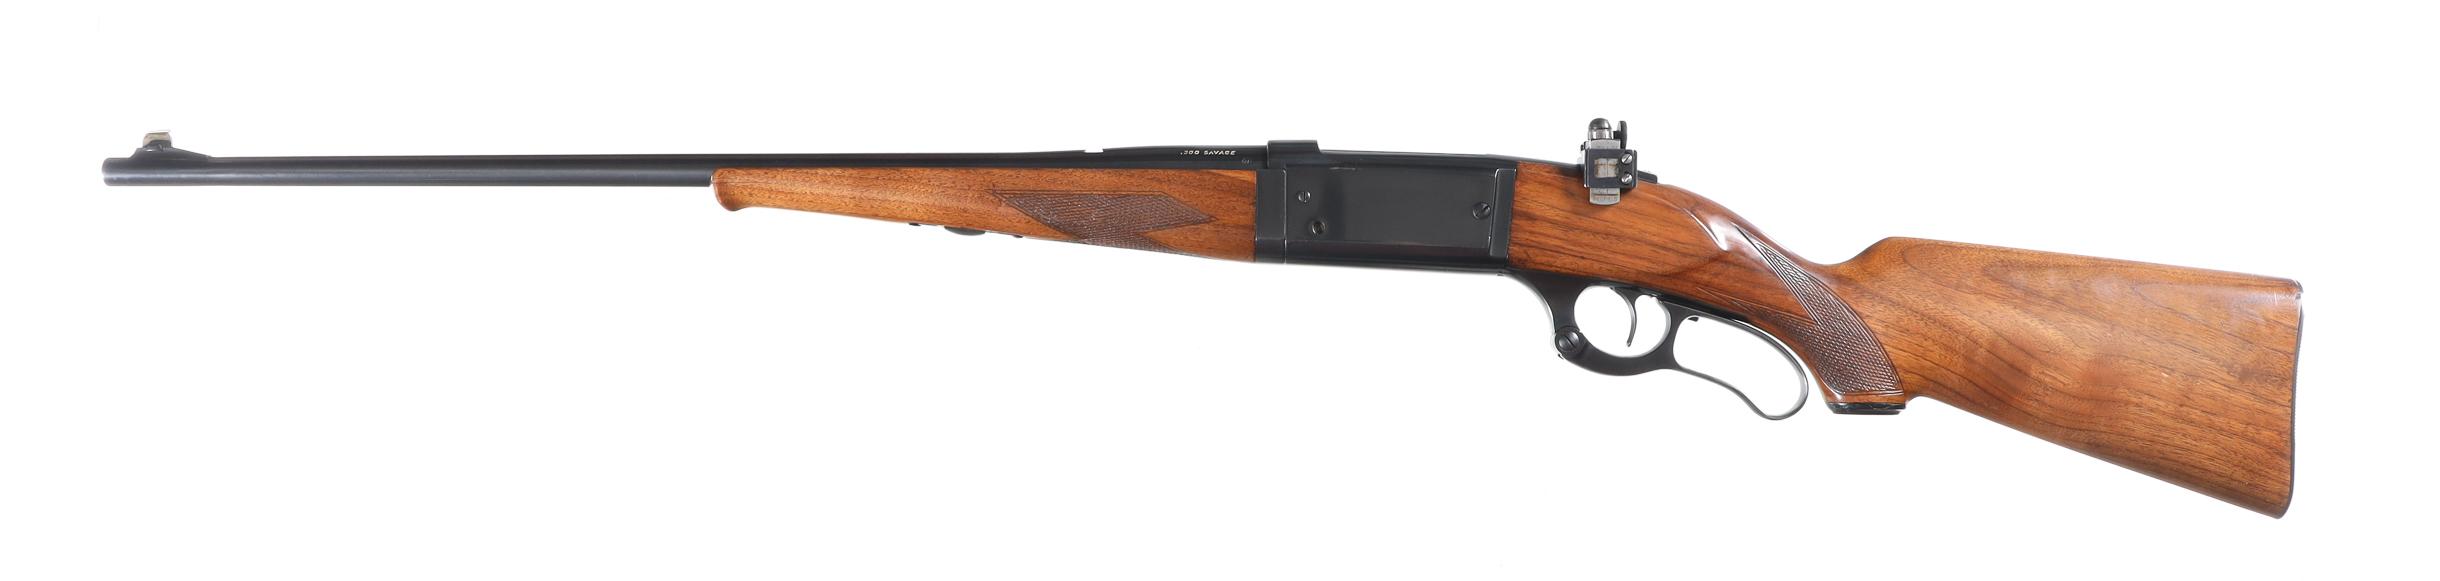 Savage 99 Takedown Lever Rifle .300 sav